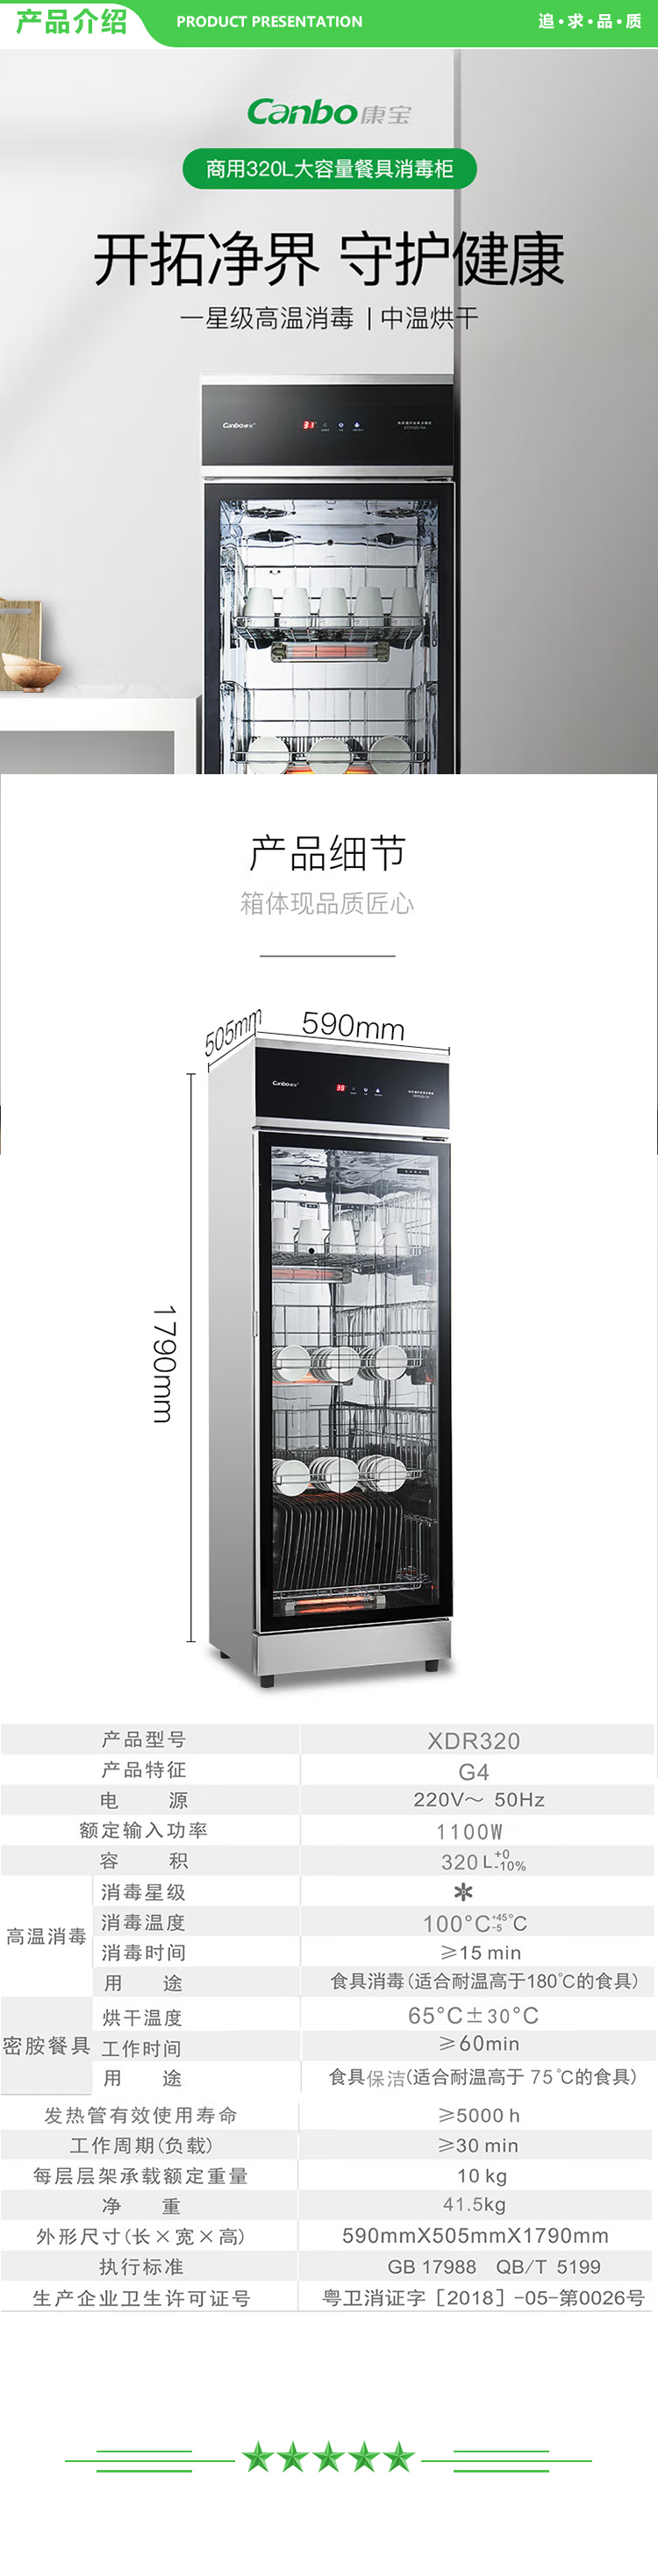 康宝 Canbo XDR320-G4 消毒柜 商用家用温食具消毒柜 中温密胺餐具烘干 风机内循环 .jpg